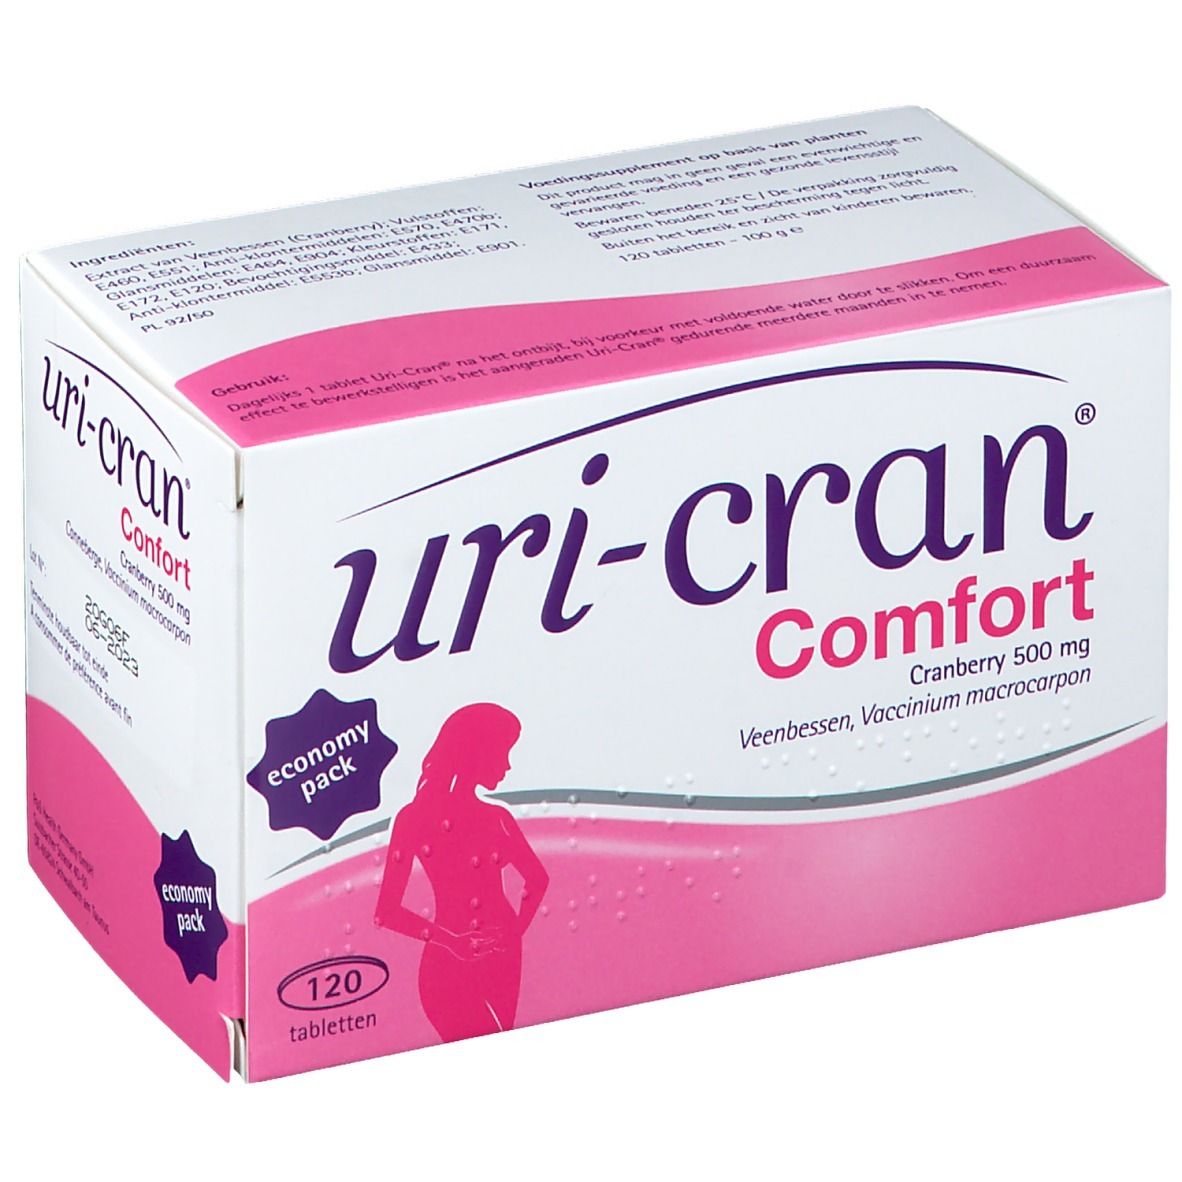 Uri-Cran Confort